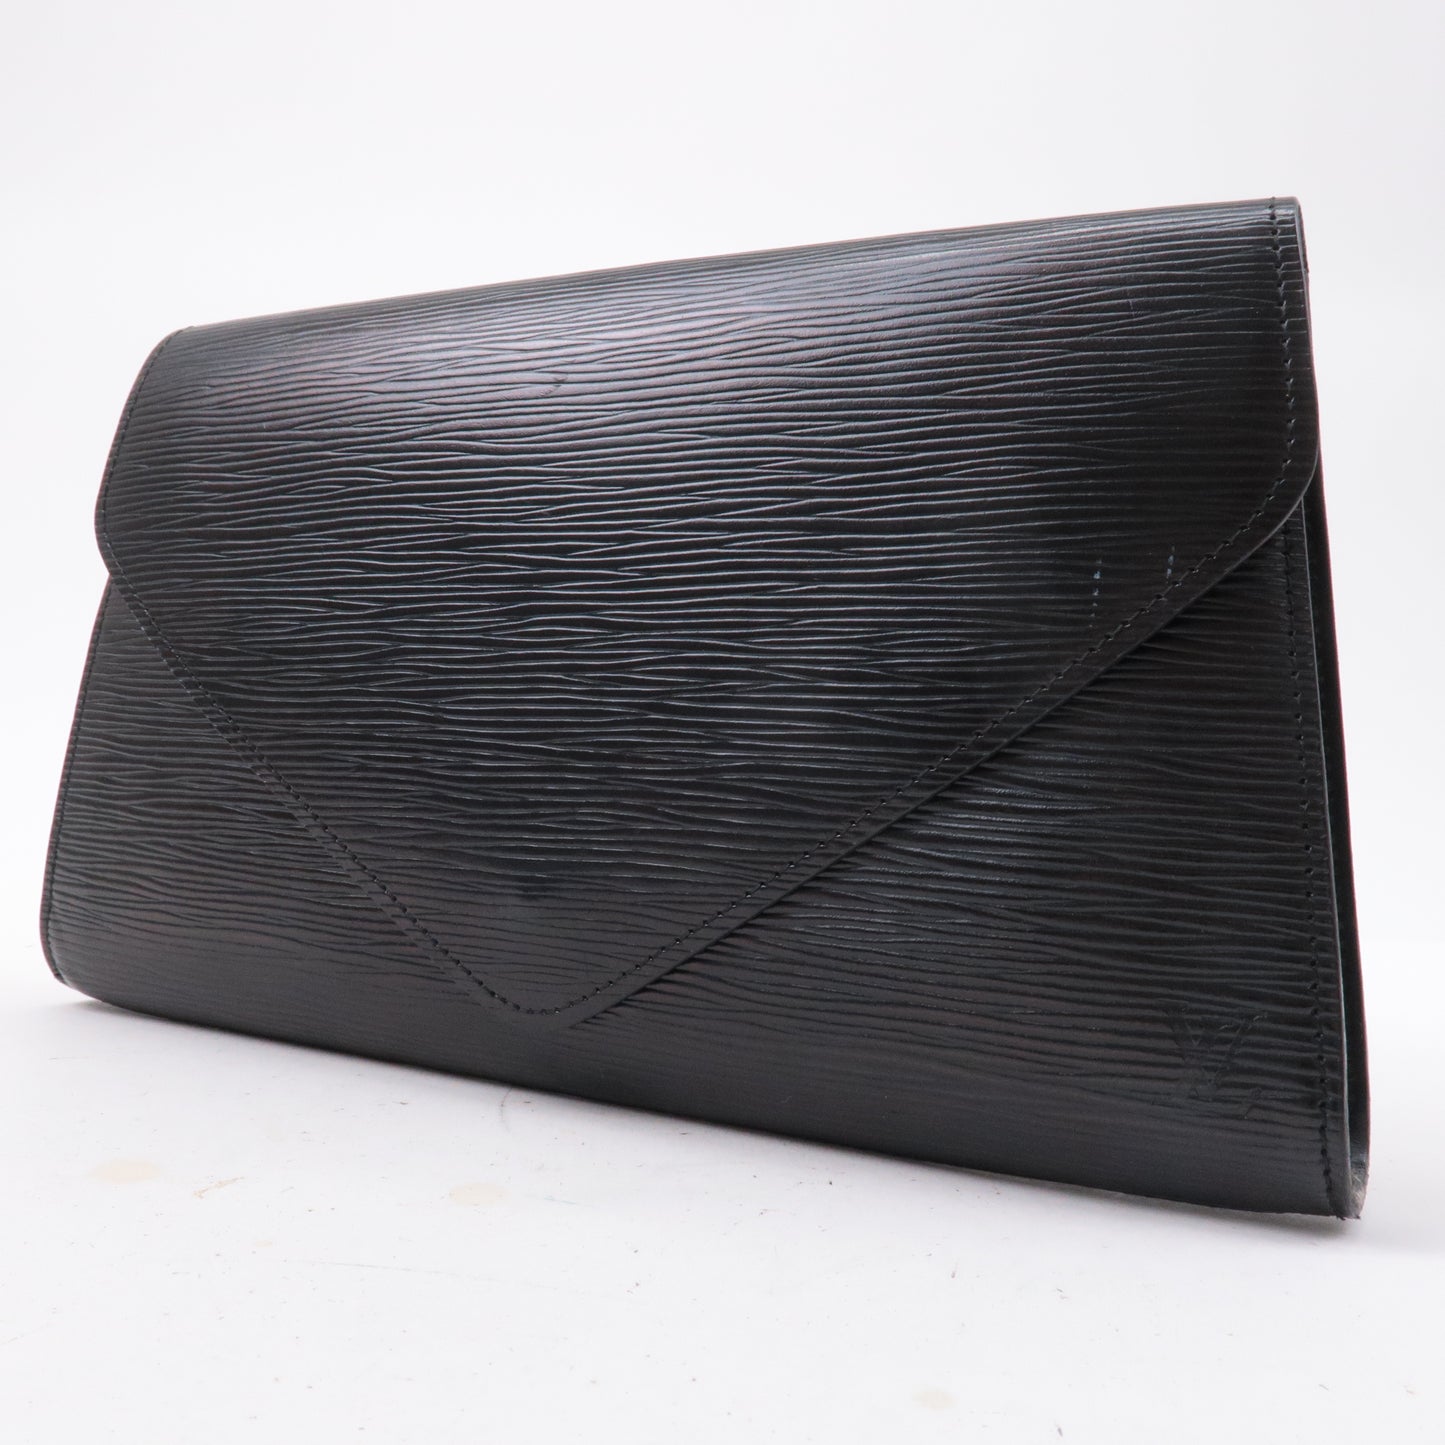 Louis-Vuitton-Epi-Arts-Deco-Clutch-Bag-Purse-Noir-M52632 – dct